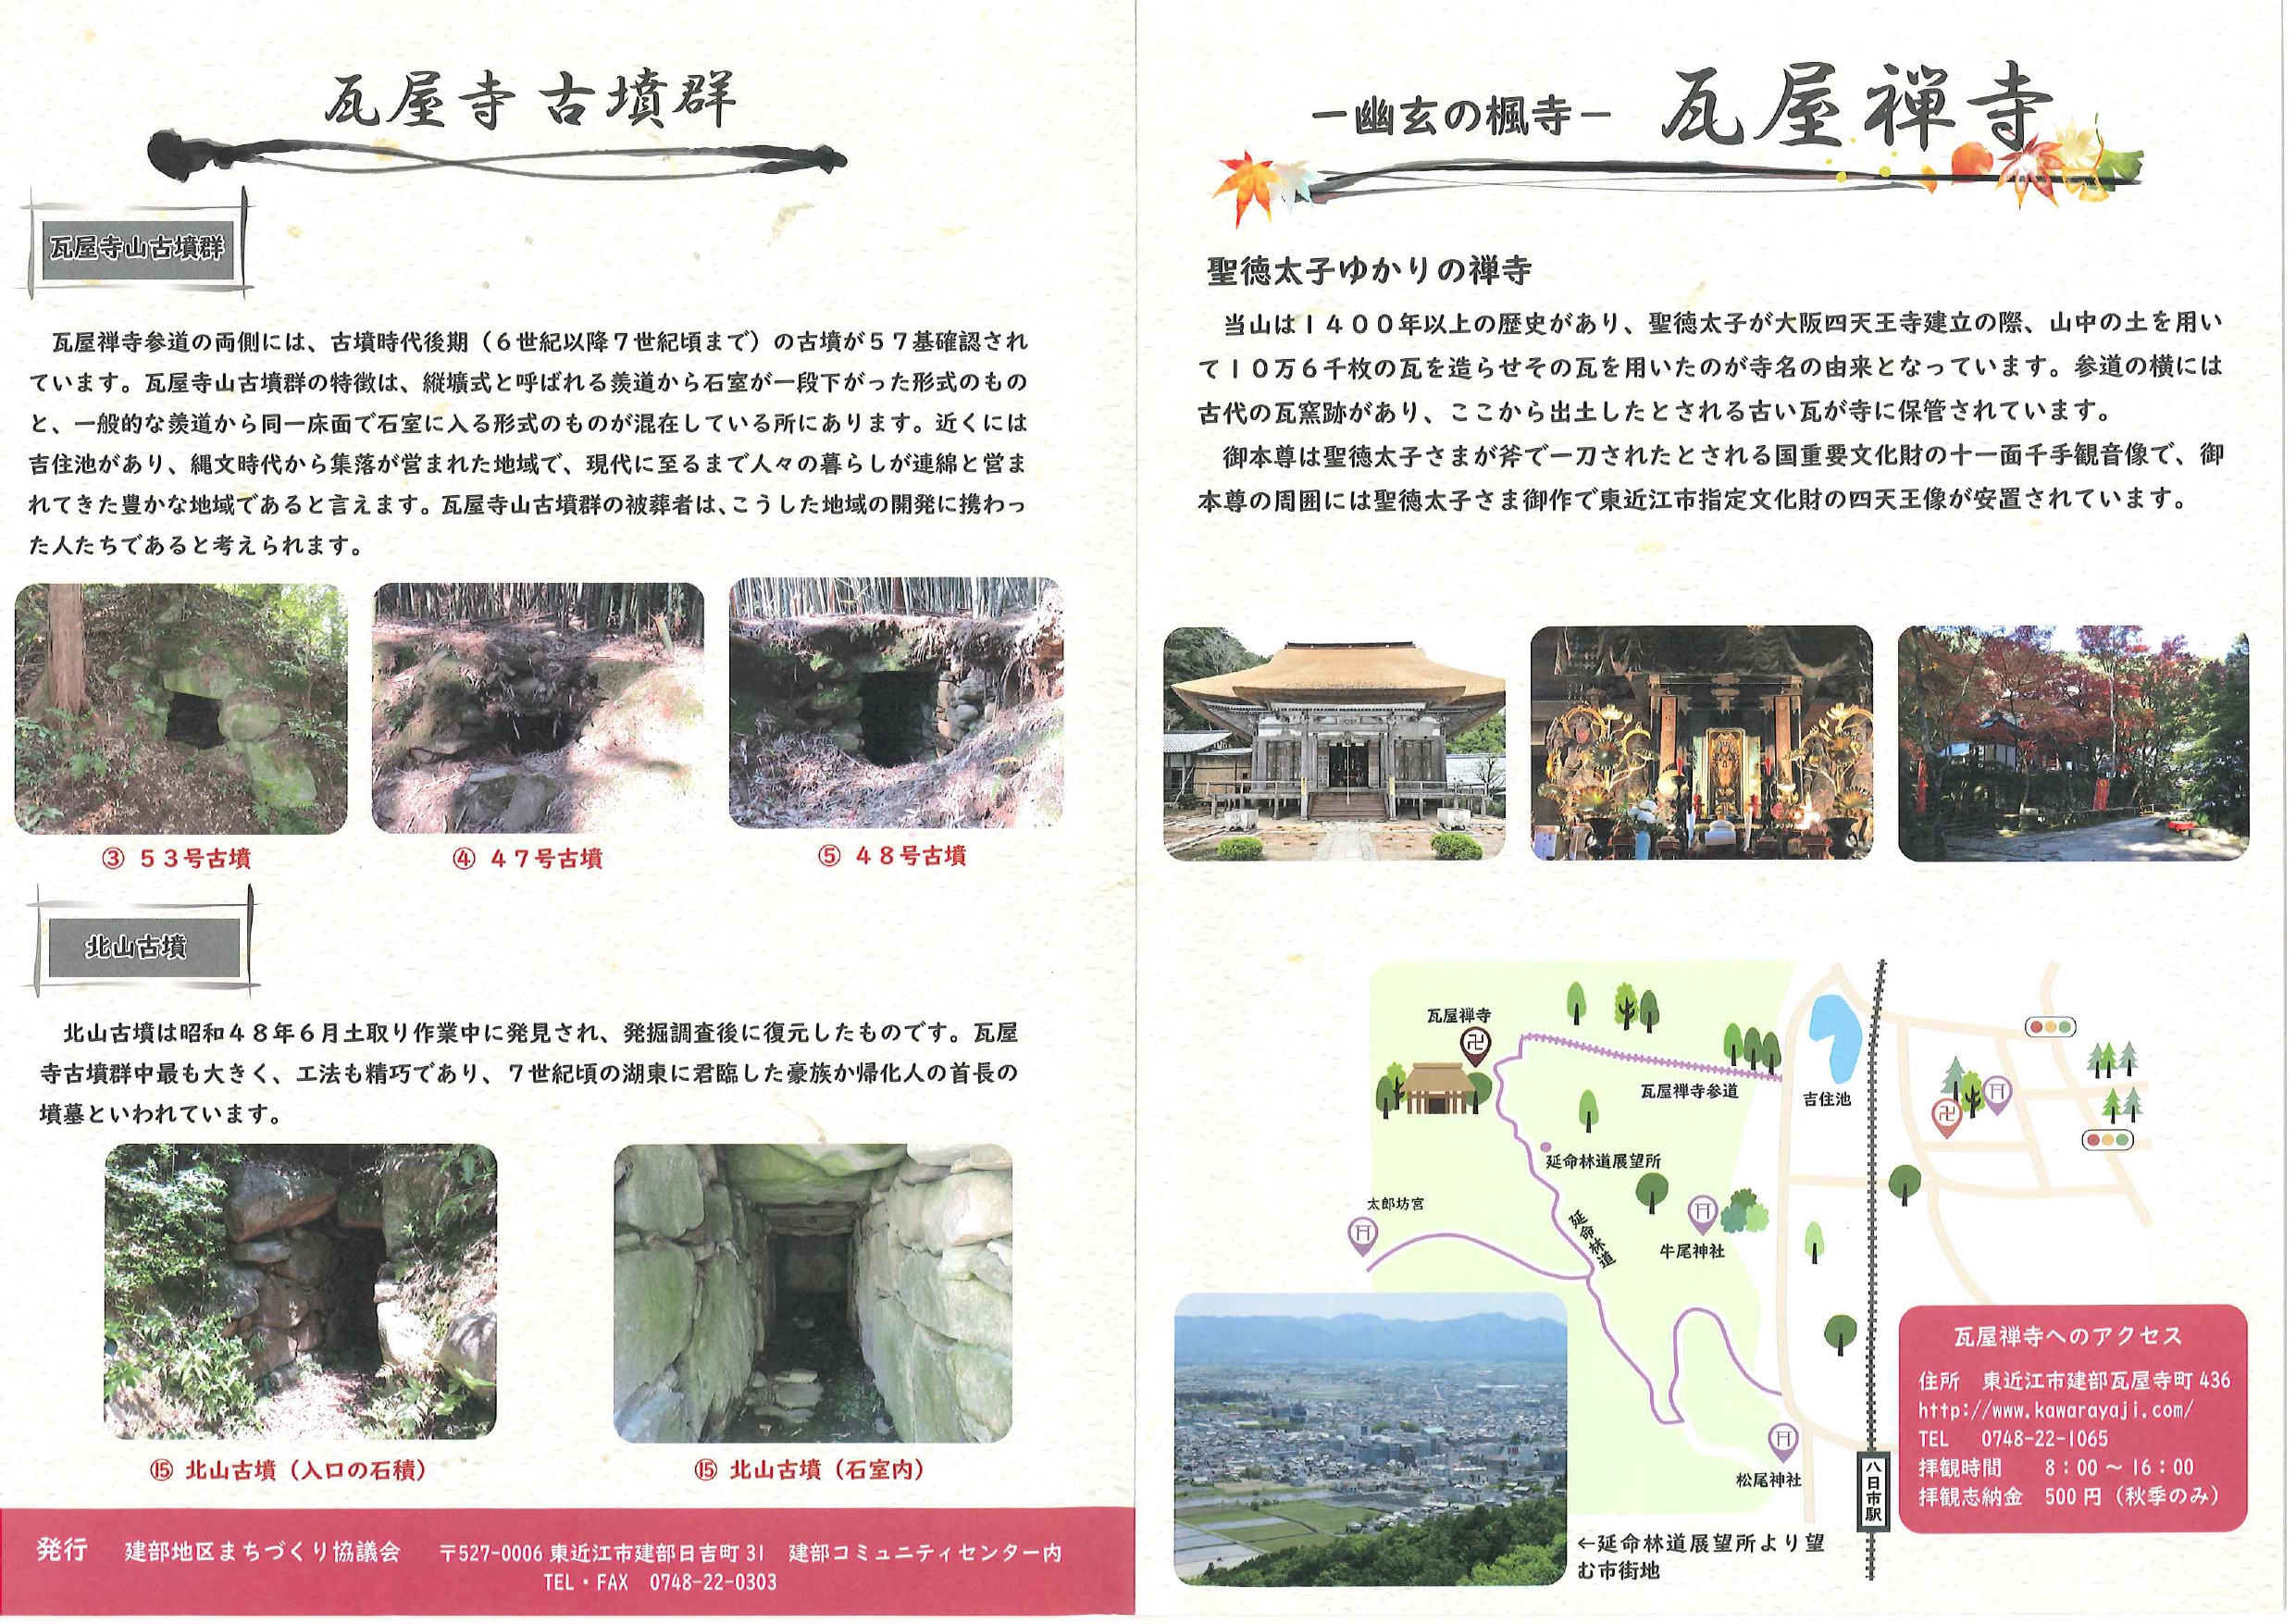 東近江市の観光スポットが紹介されました。